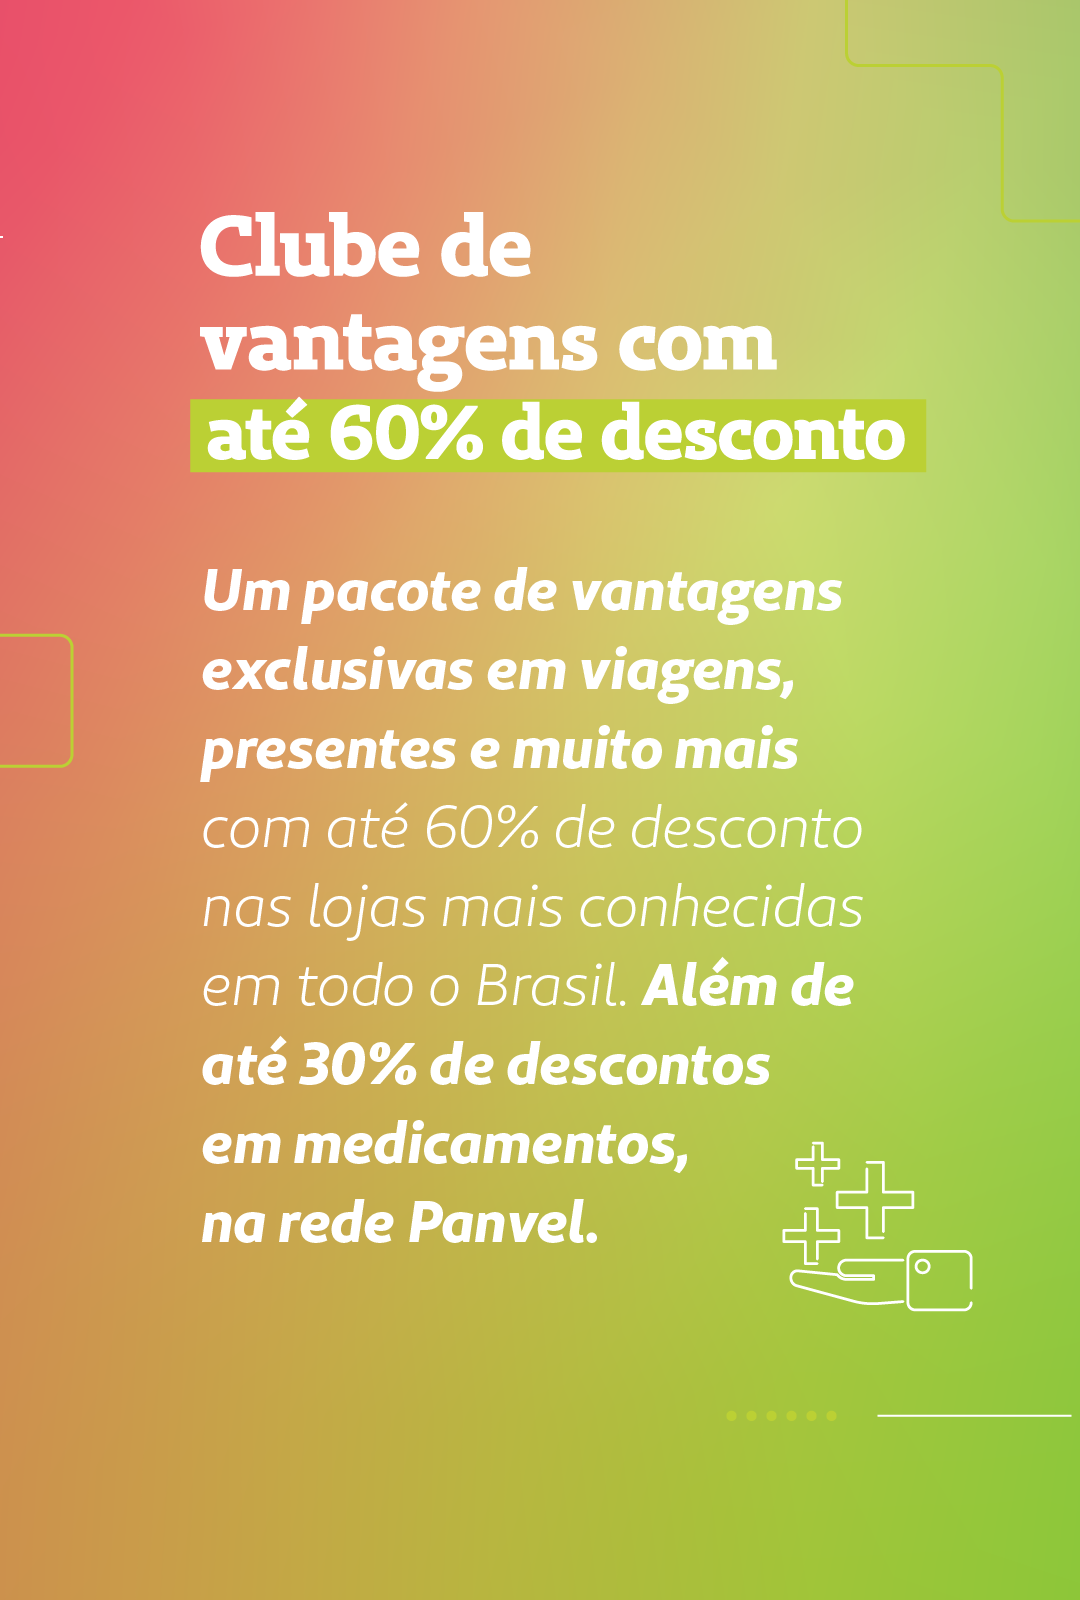 Card tem escrito: Clube de vantagens com até 60% de desconto nas lojas mais conhecidas em todo Brasil e 30% de desconto em medicamentos na rede Panvel